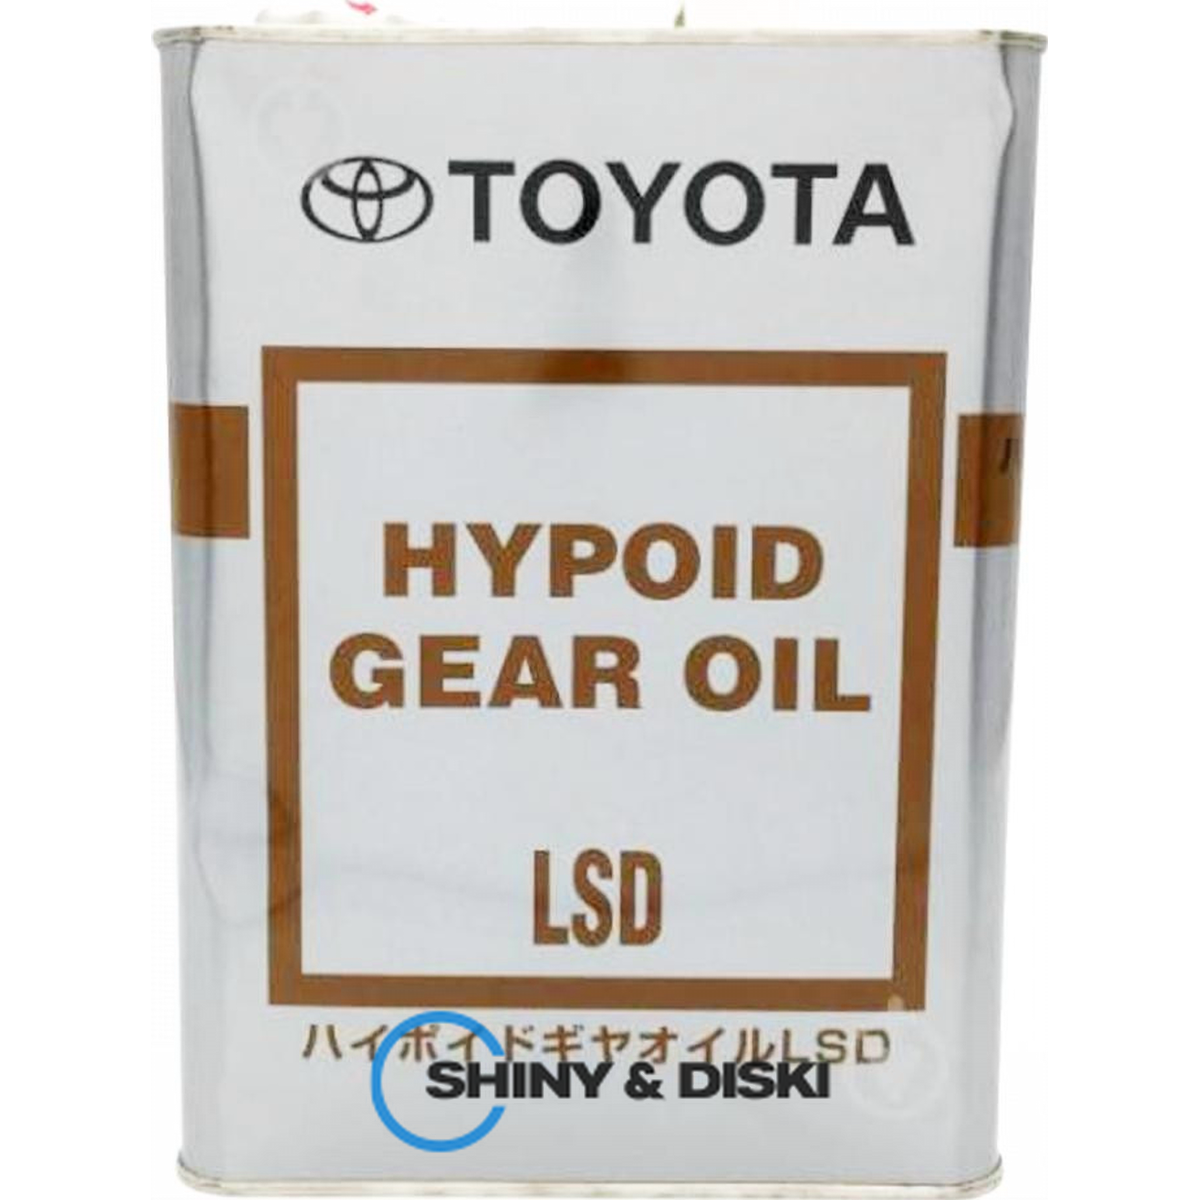 toyota hypoid gear oil lsd